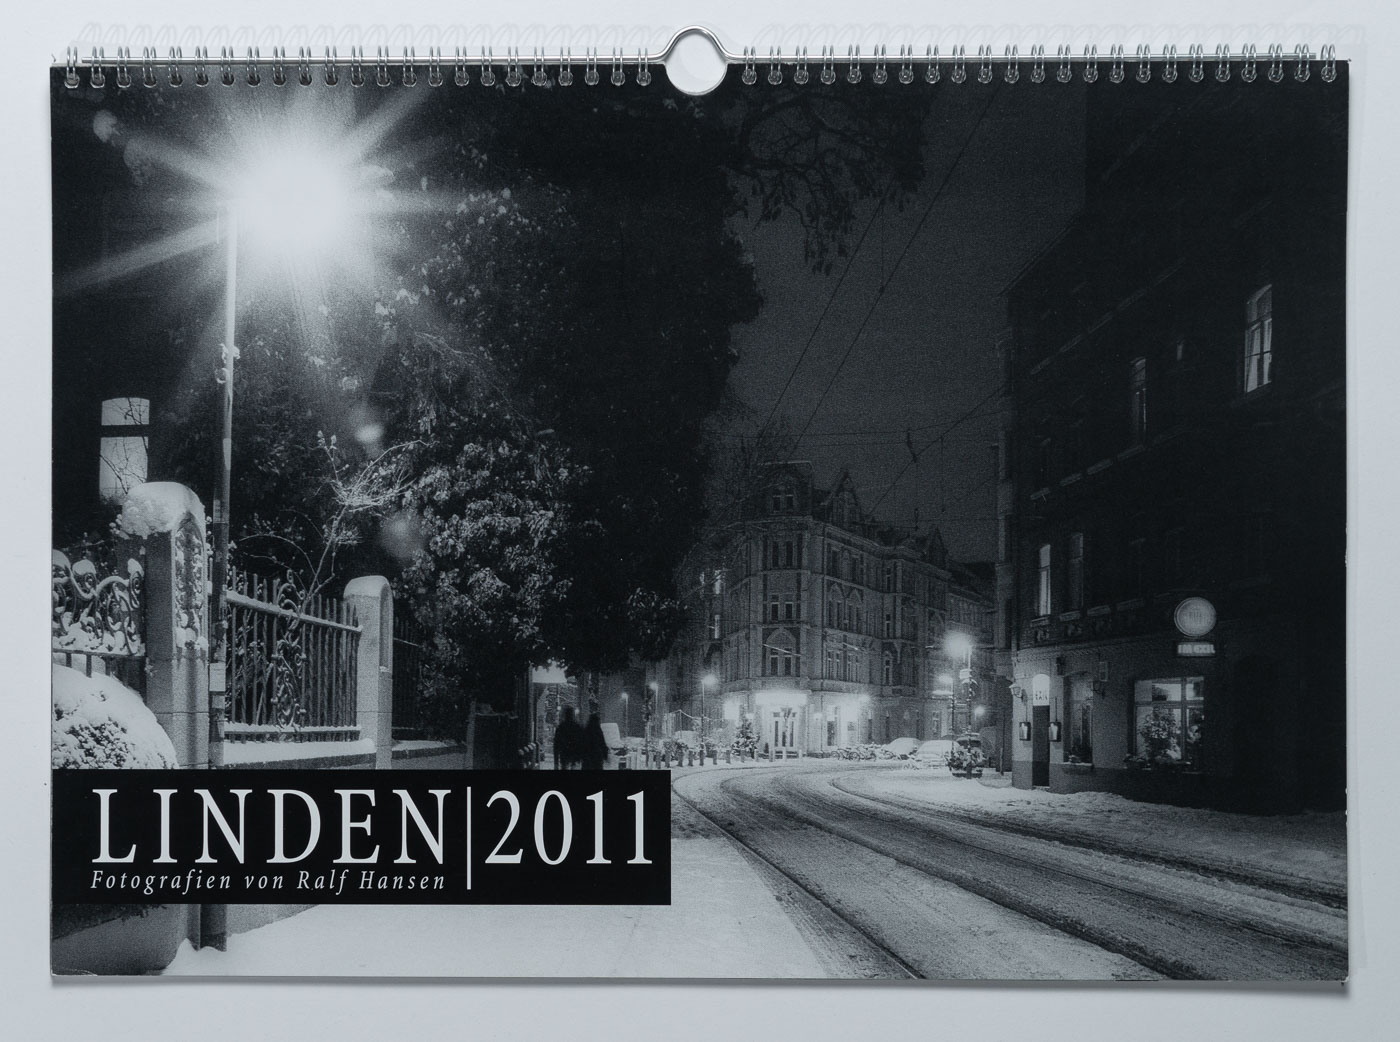 Lindenkalender LINDEN 2011